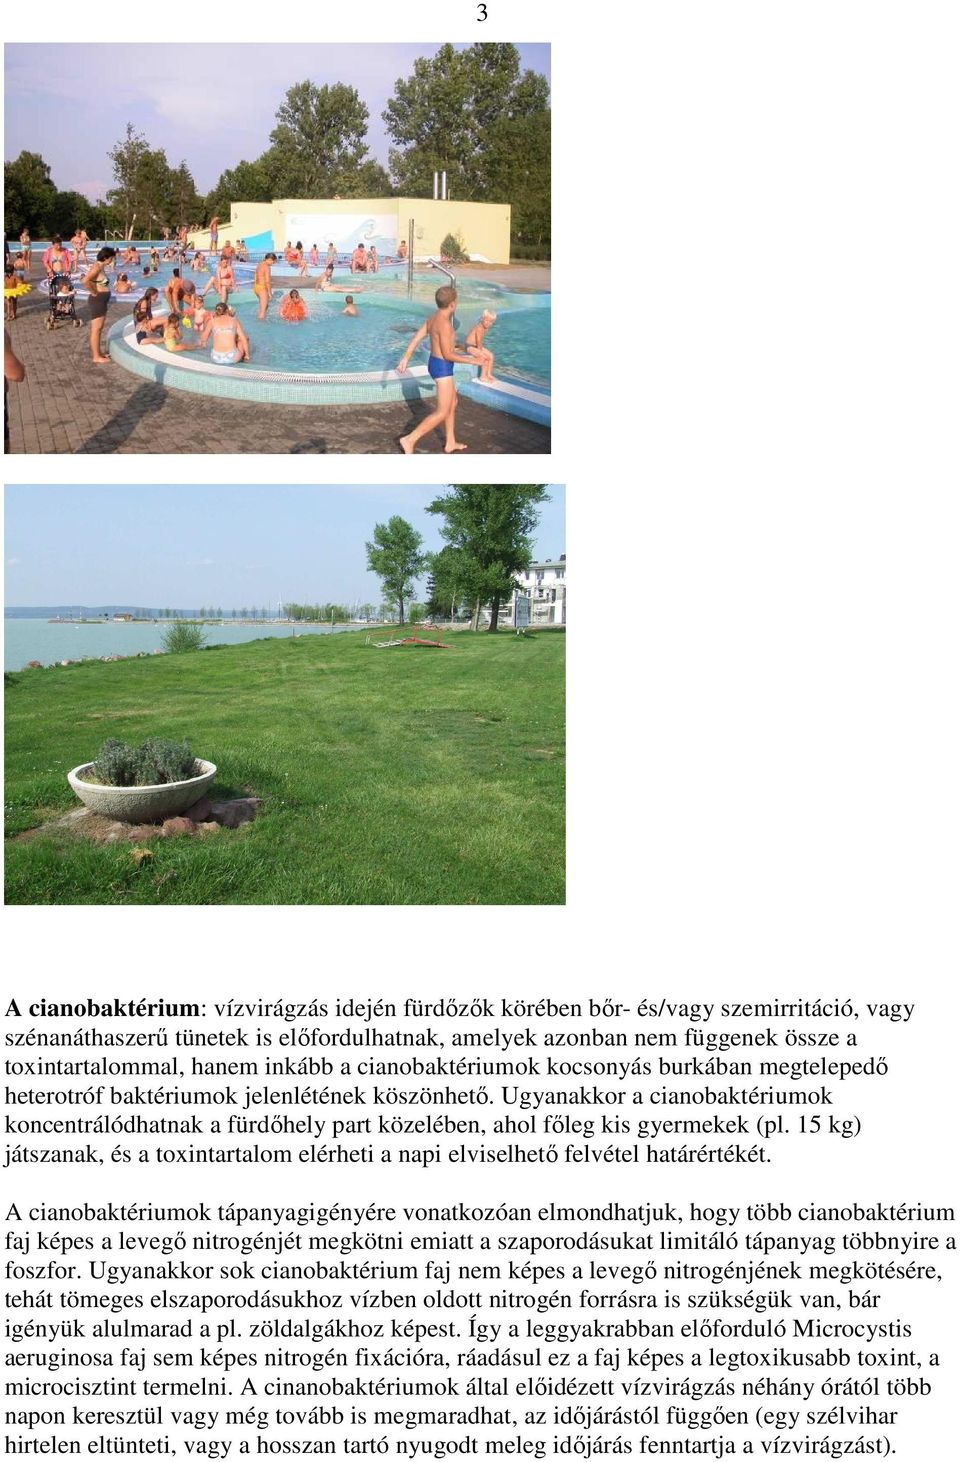 Ugyanakkor a cianobaktériumok koncentrálódhatnak a fürdıhely part közelében, ahol fıleg kis gyermekek (pl. 15 kg) játszanak, és a toxintartalom elérheti a napi elviselhetı felvétel határértékét.